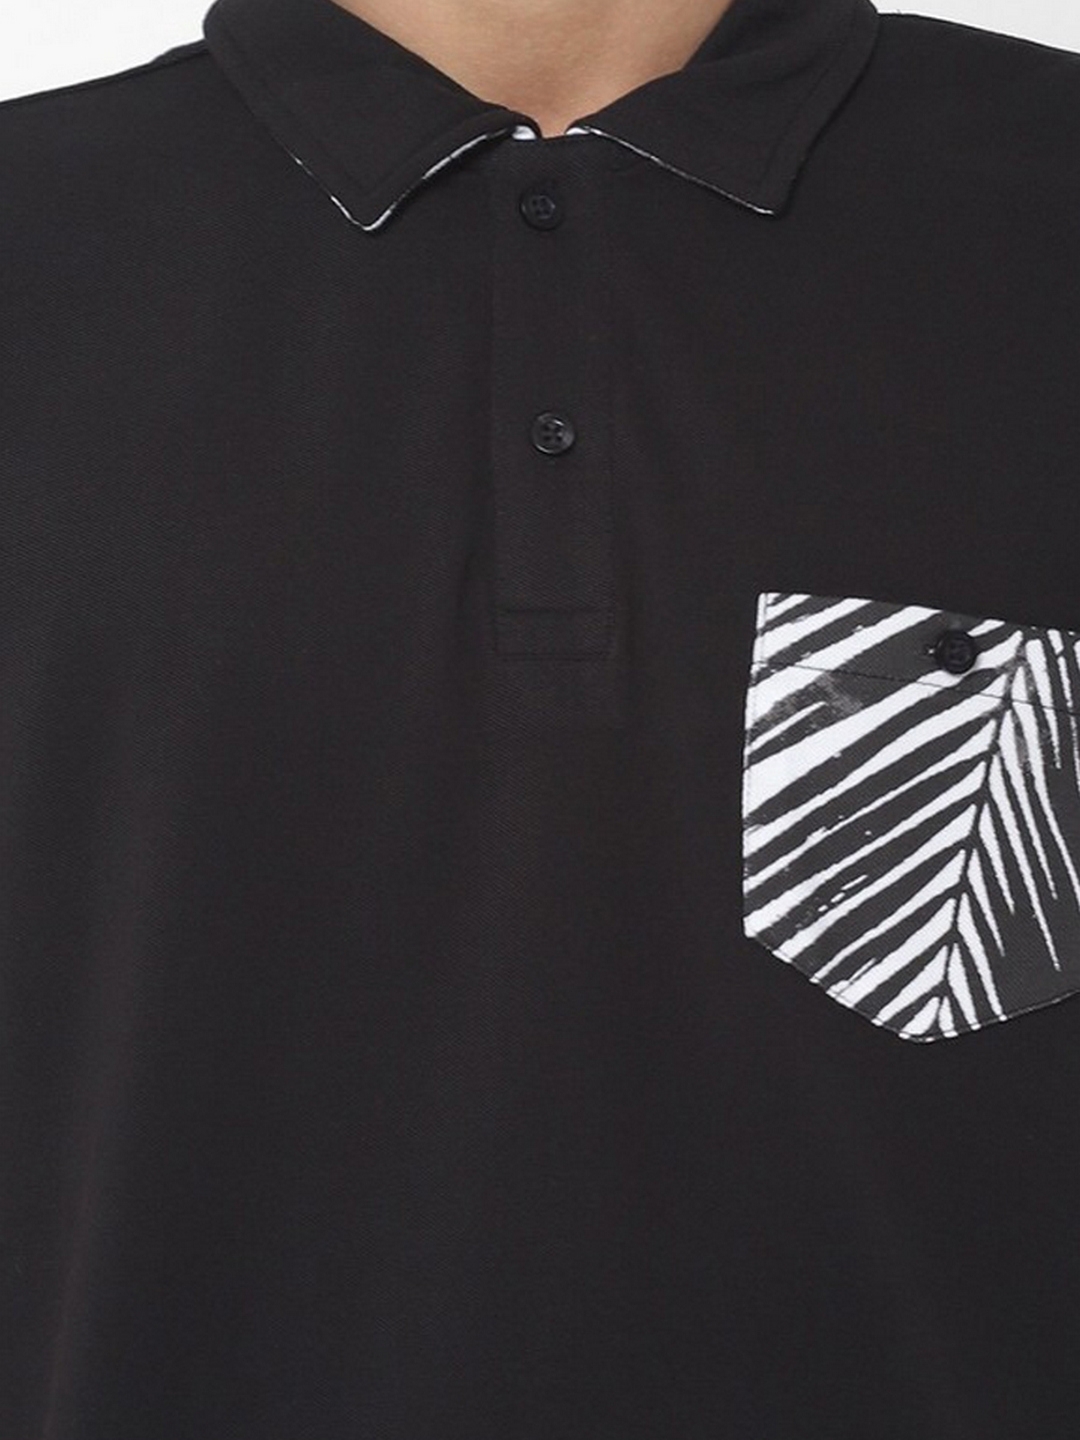 Yoyo Patch Pocket Black Polo T-Shirt